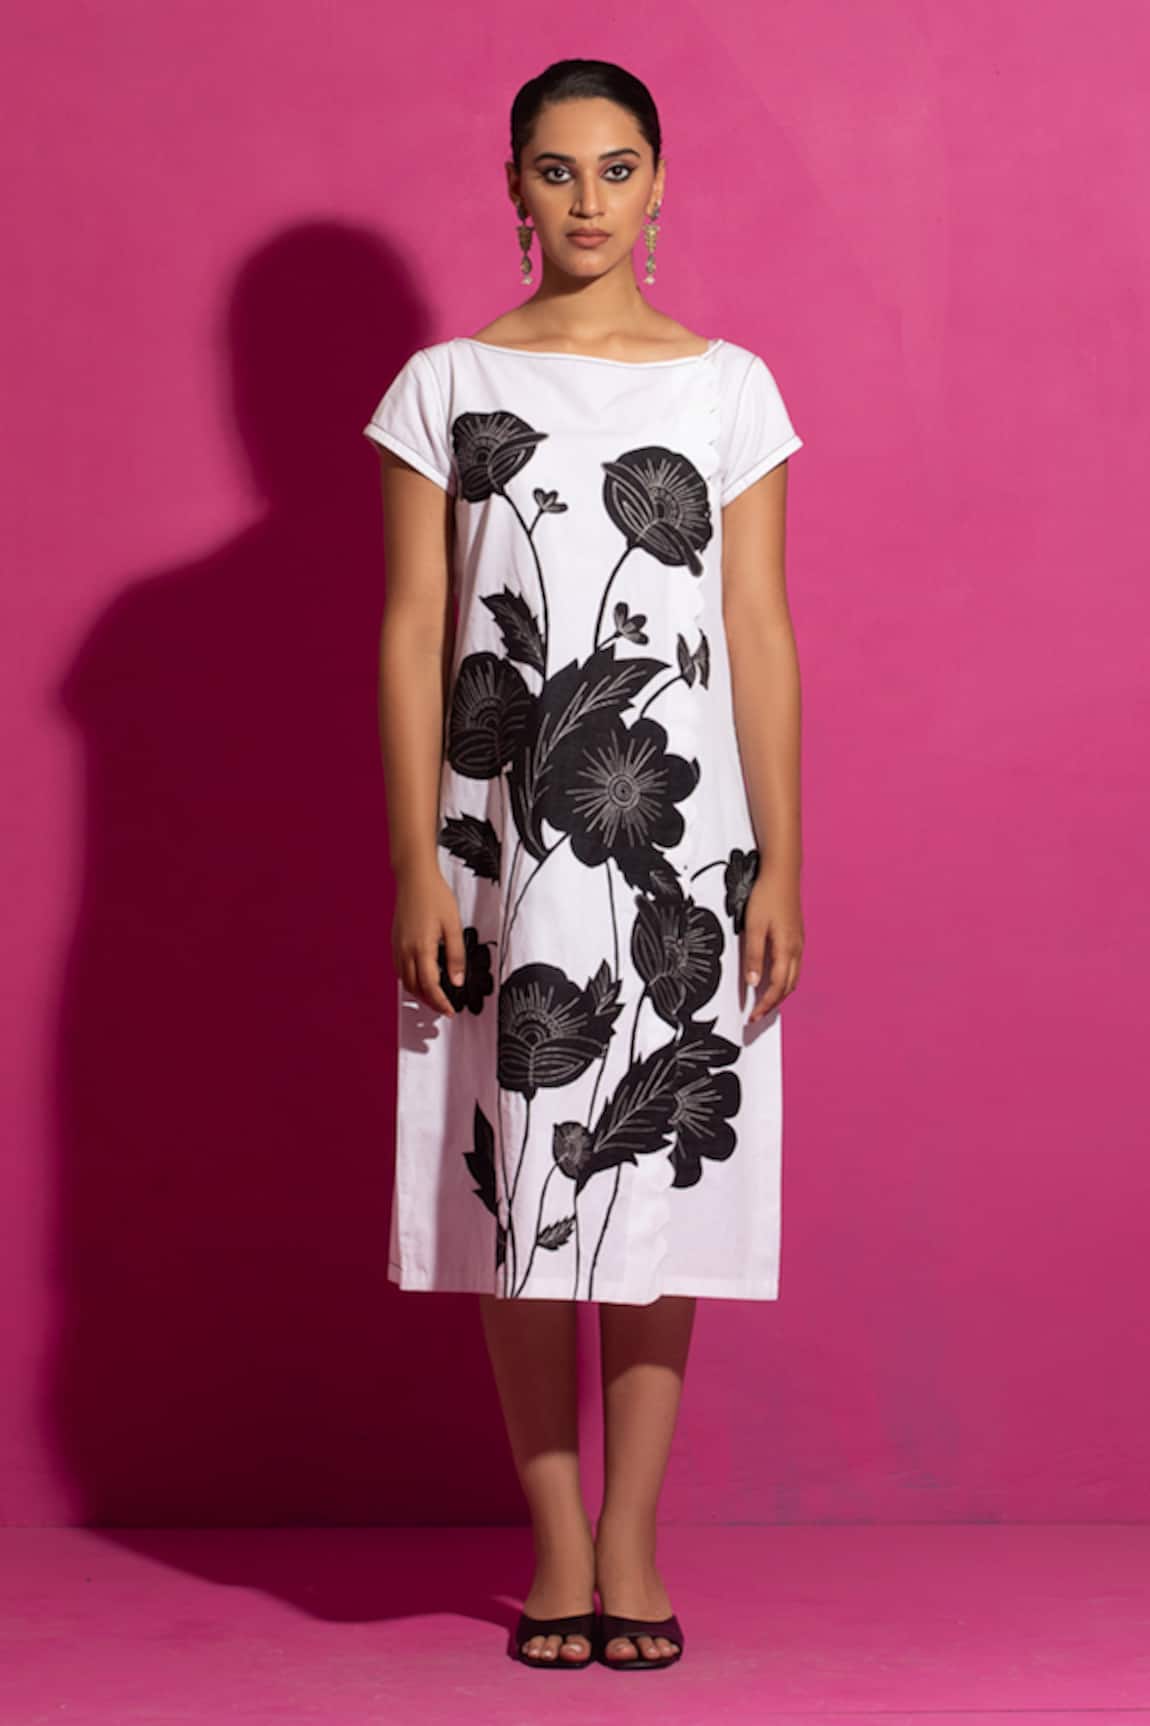 Saksham Neharicka Daffodil Applique Midi Dress